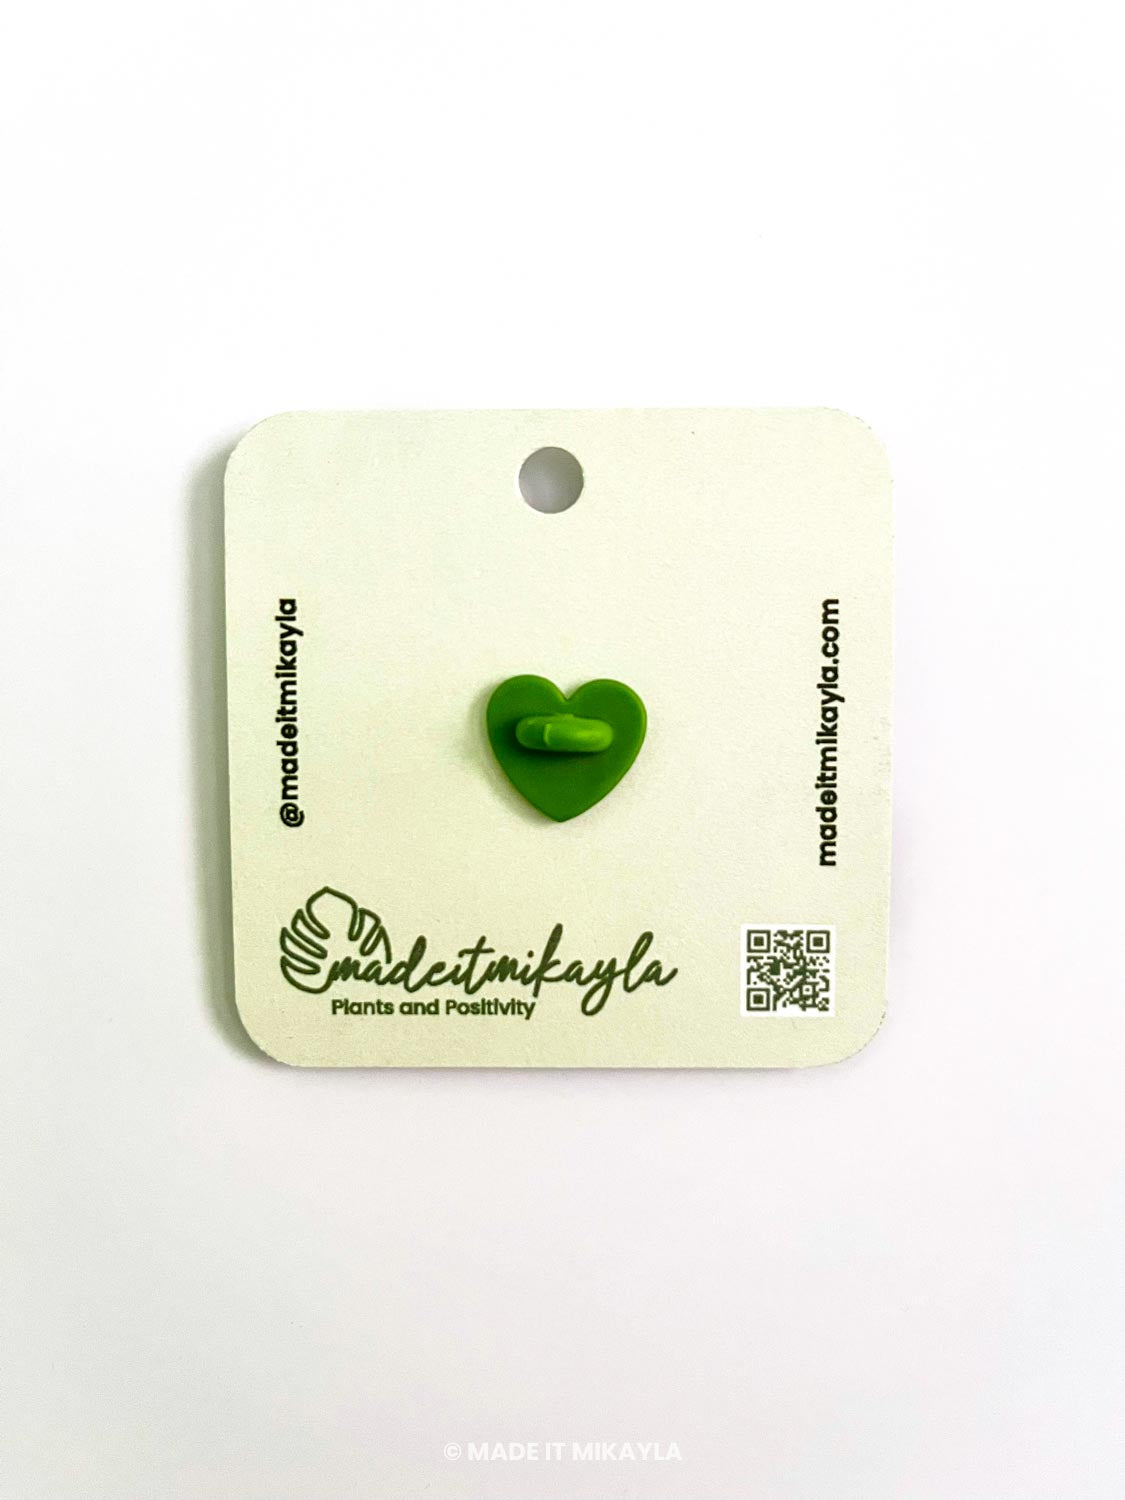 Heart Leaf Wooden Pin | MadeItMikayla